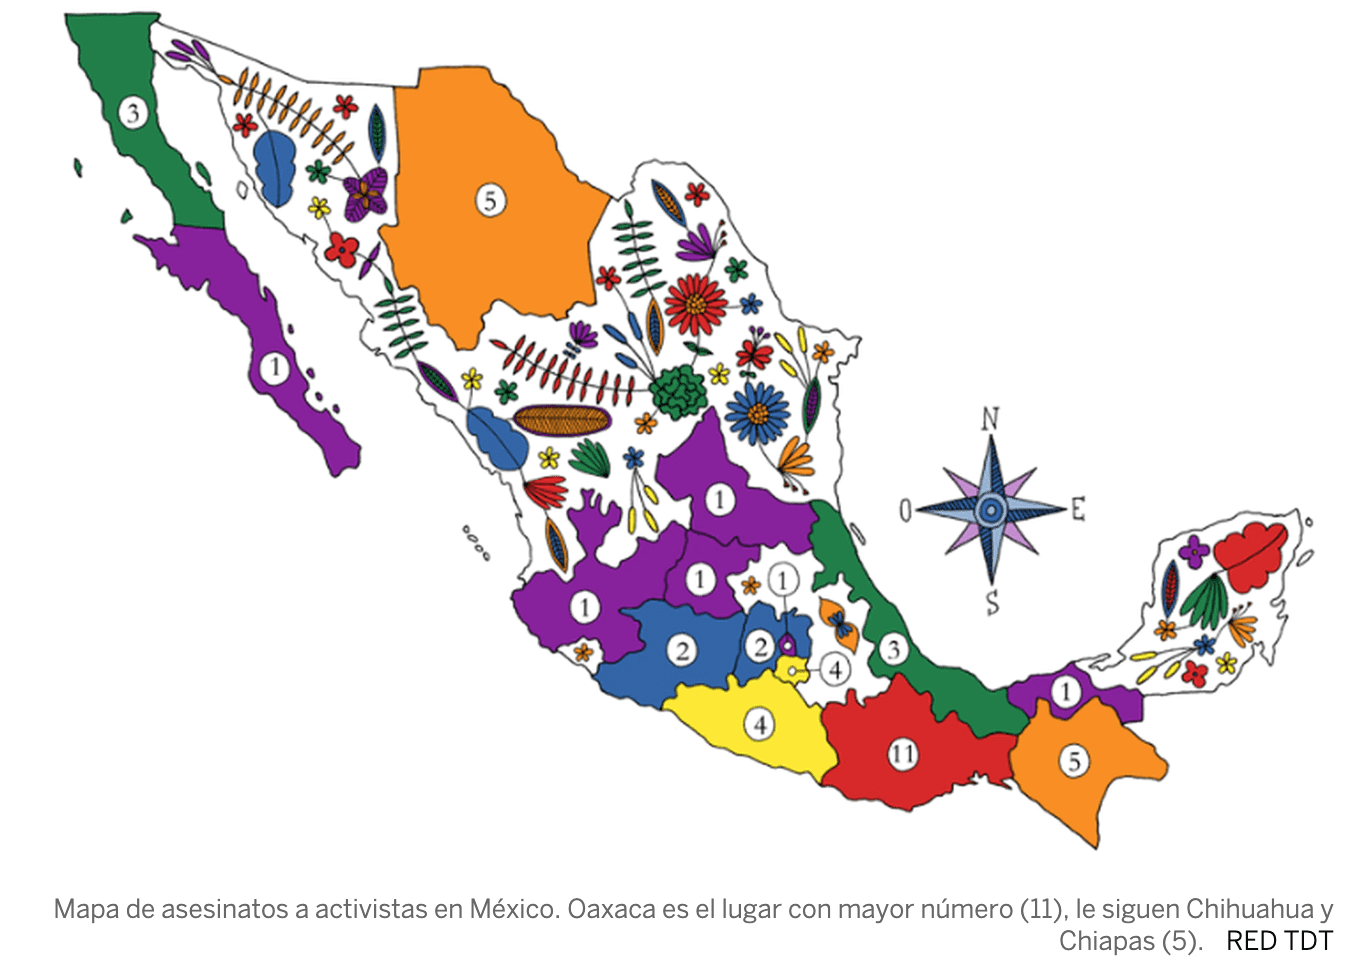 Se registran 45 asesinatos de activistas en México en 2019 y 2020